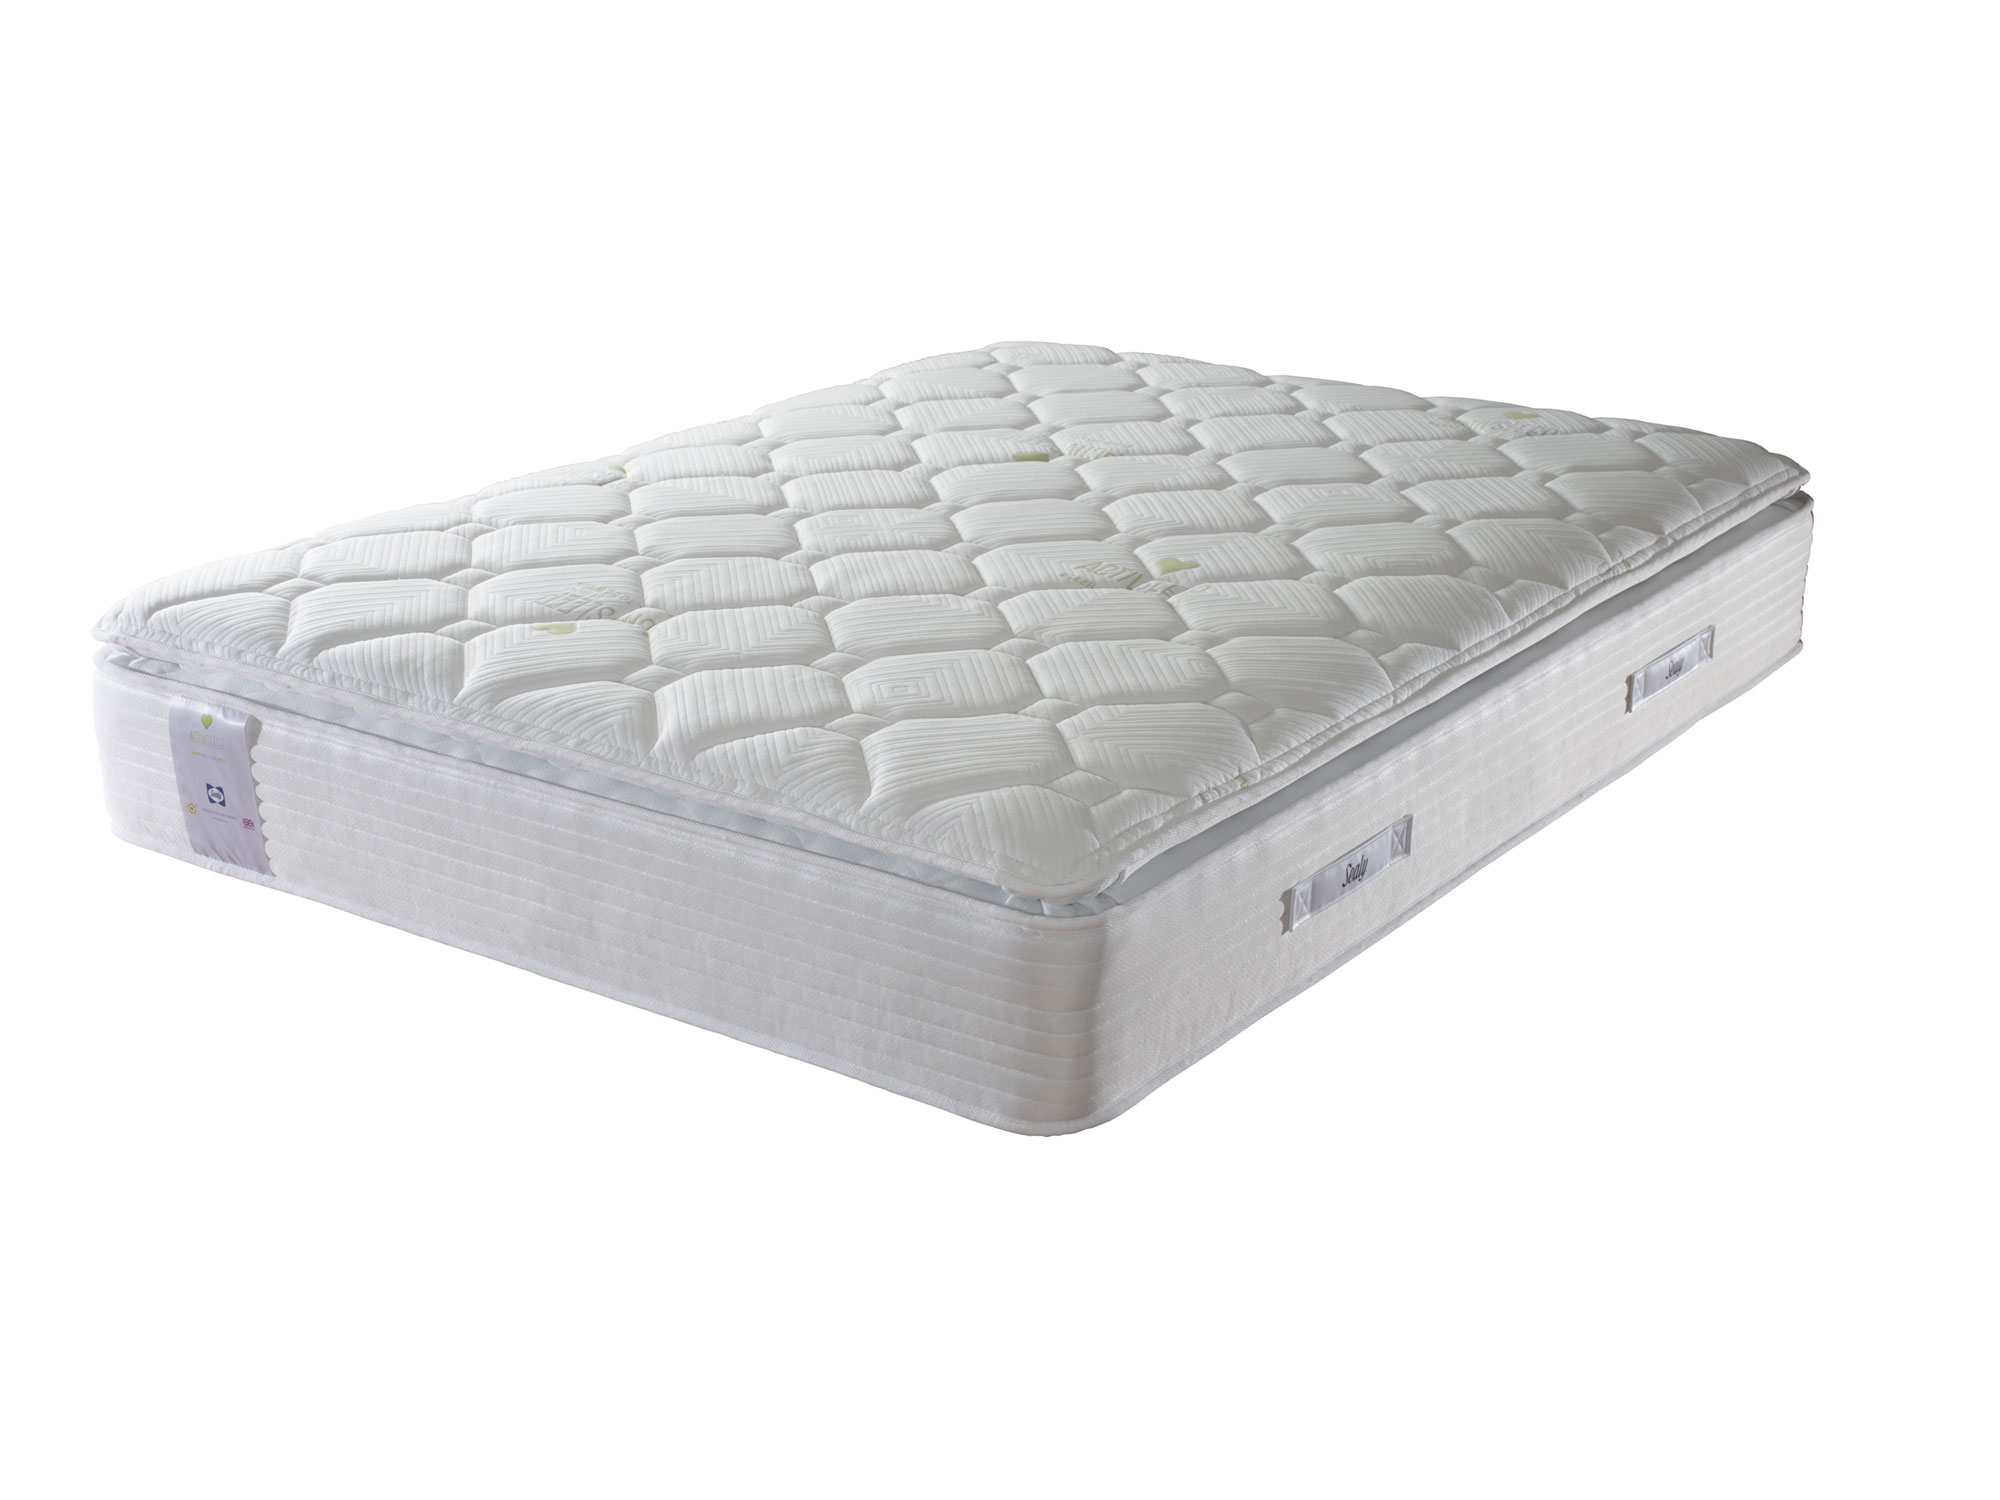 5ft King Size Sealy ActivSleep Geltex Pocket Pillow Top 2200 Mattress ...